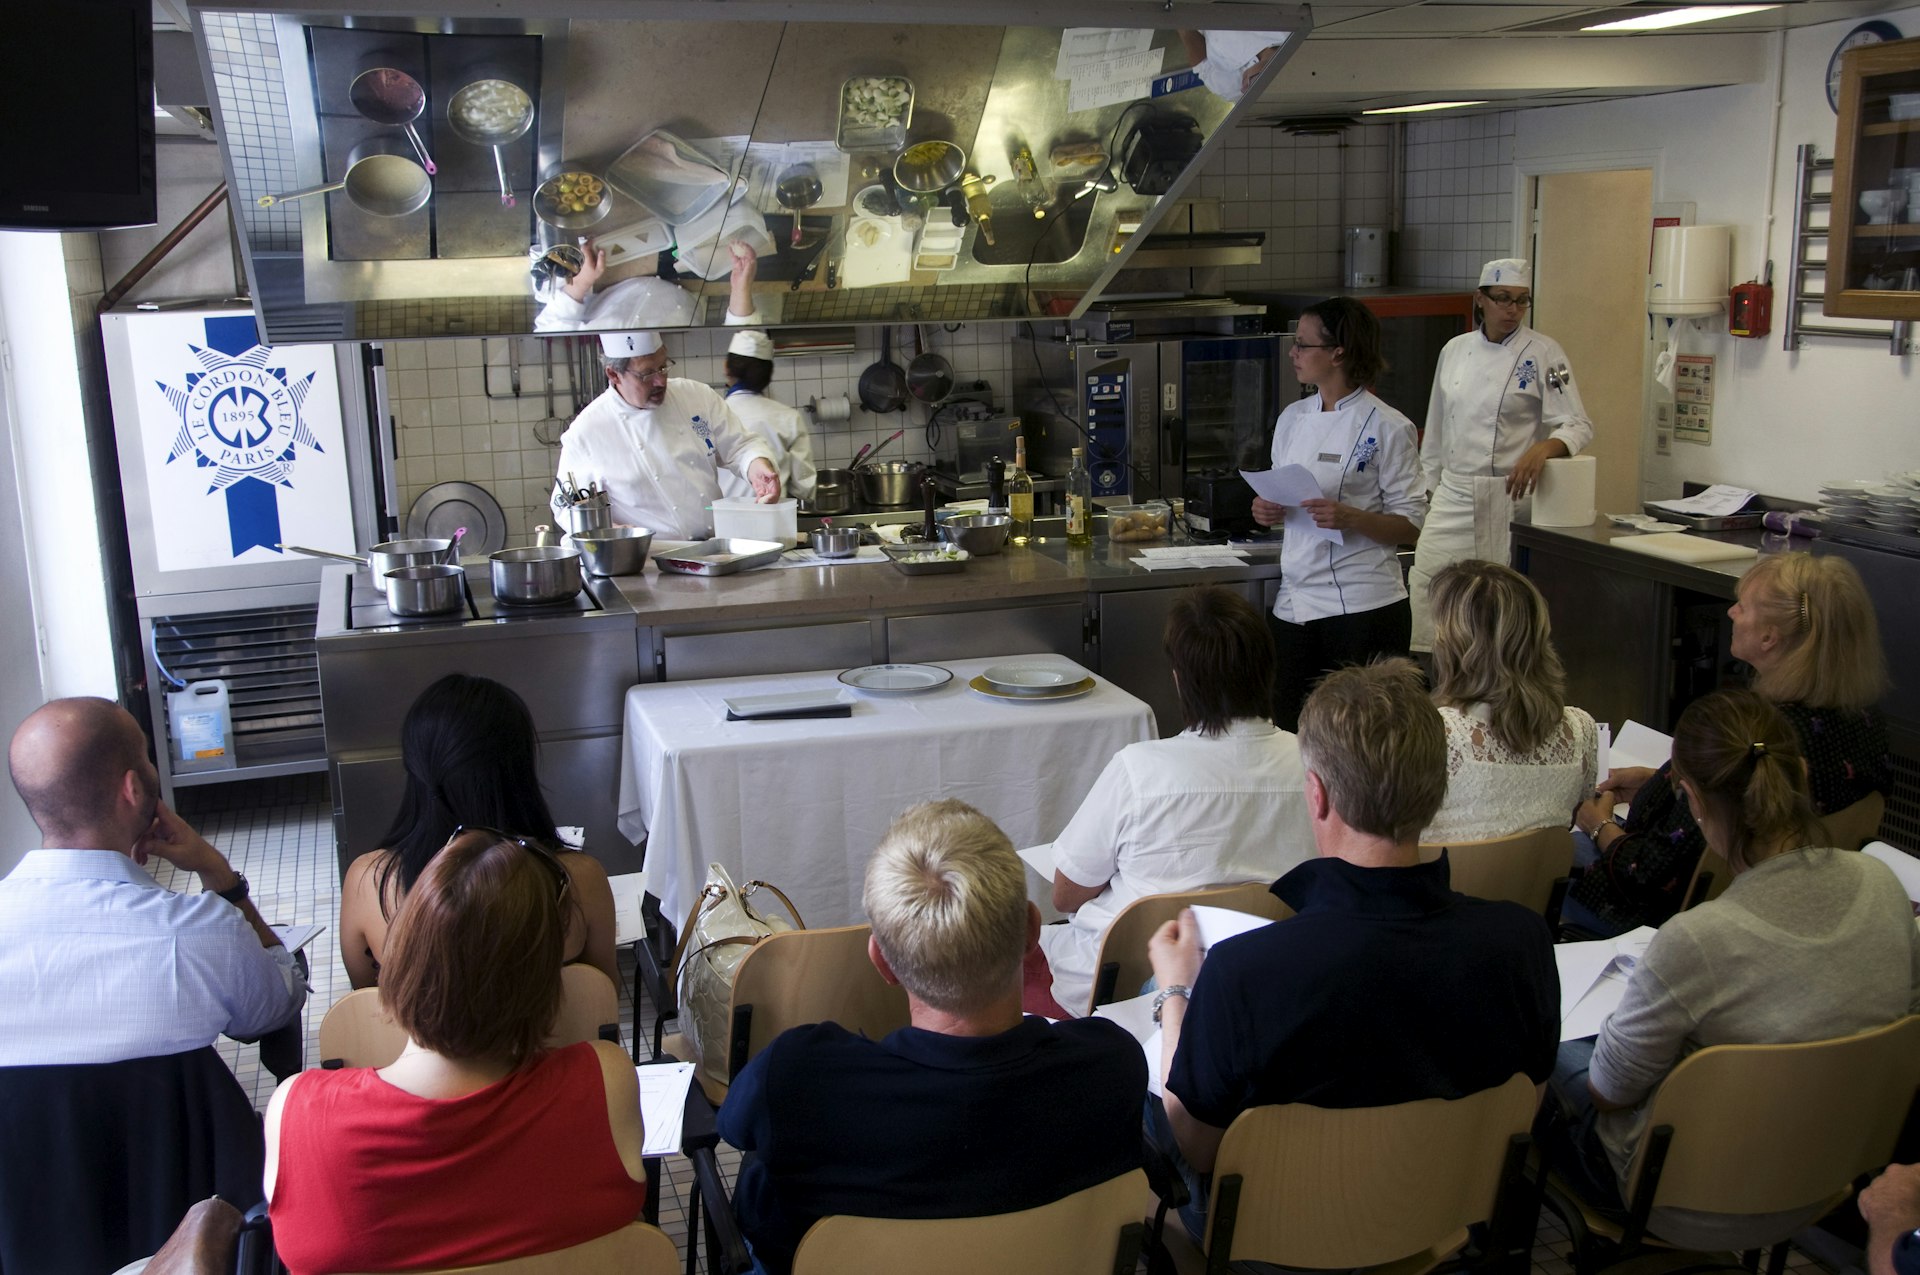 Students taking a cooking course at Ecole Le Cordon Bleu, Paris